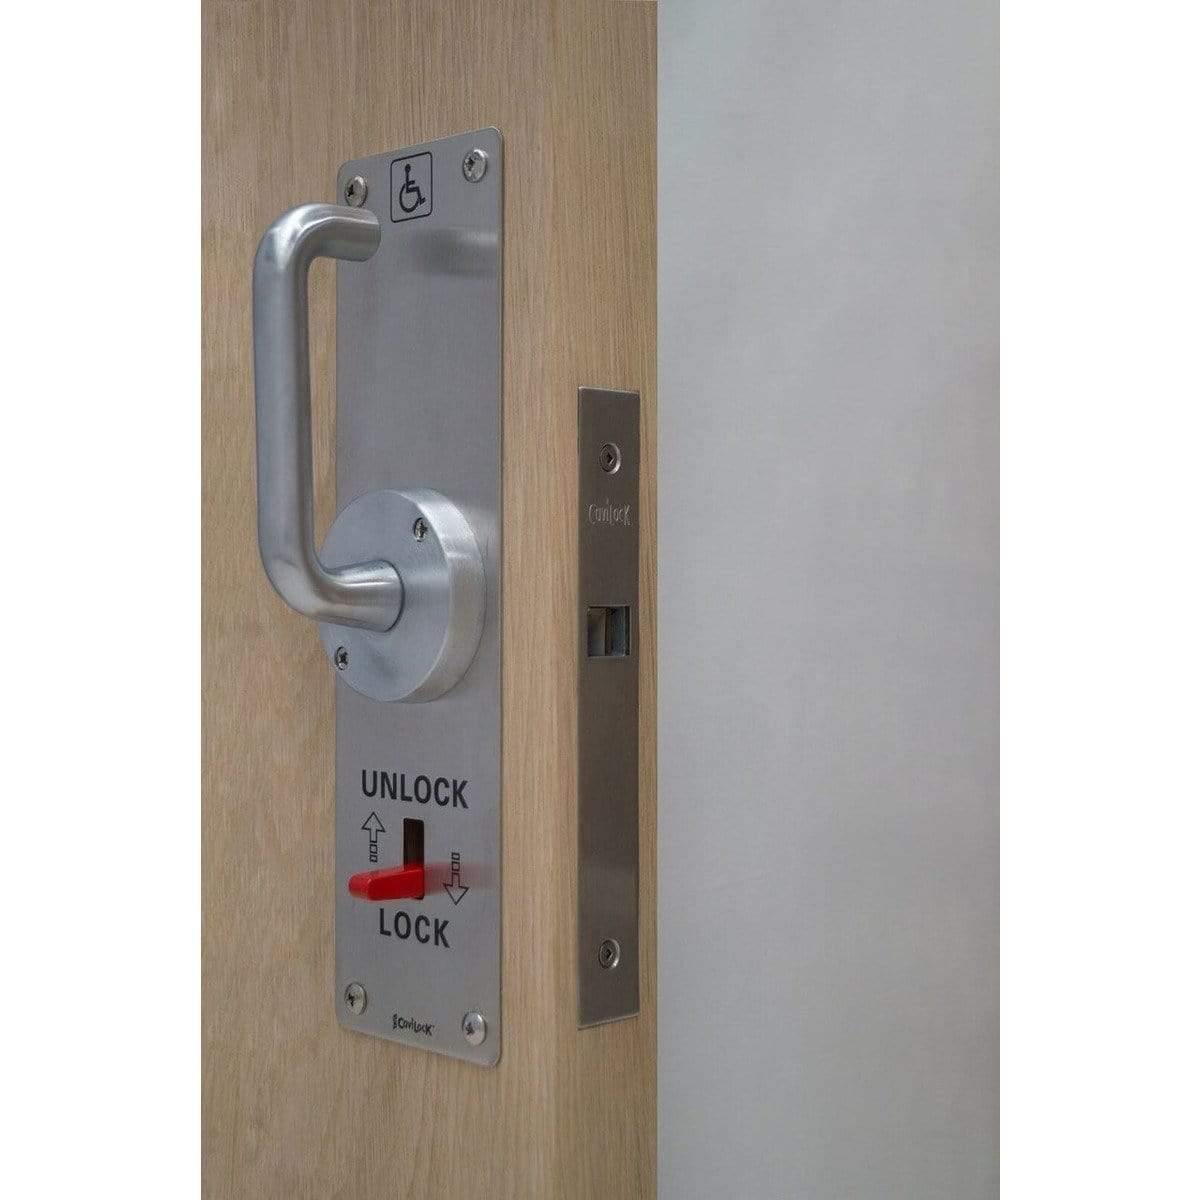 CL100 ADA LaviLock Handle & Lock For Barn Door